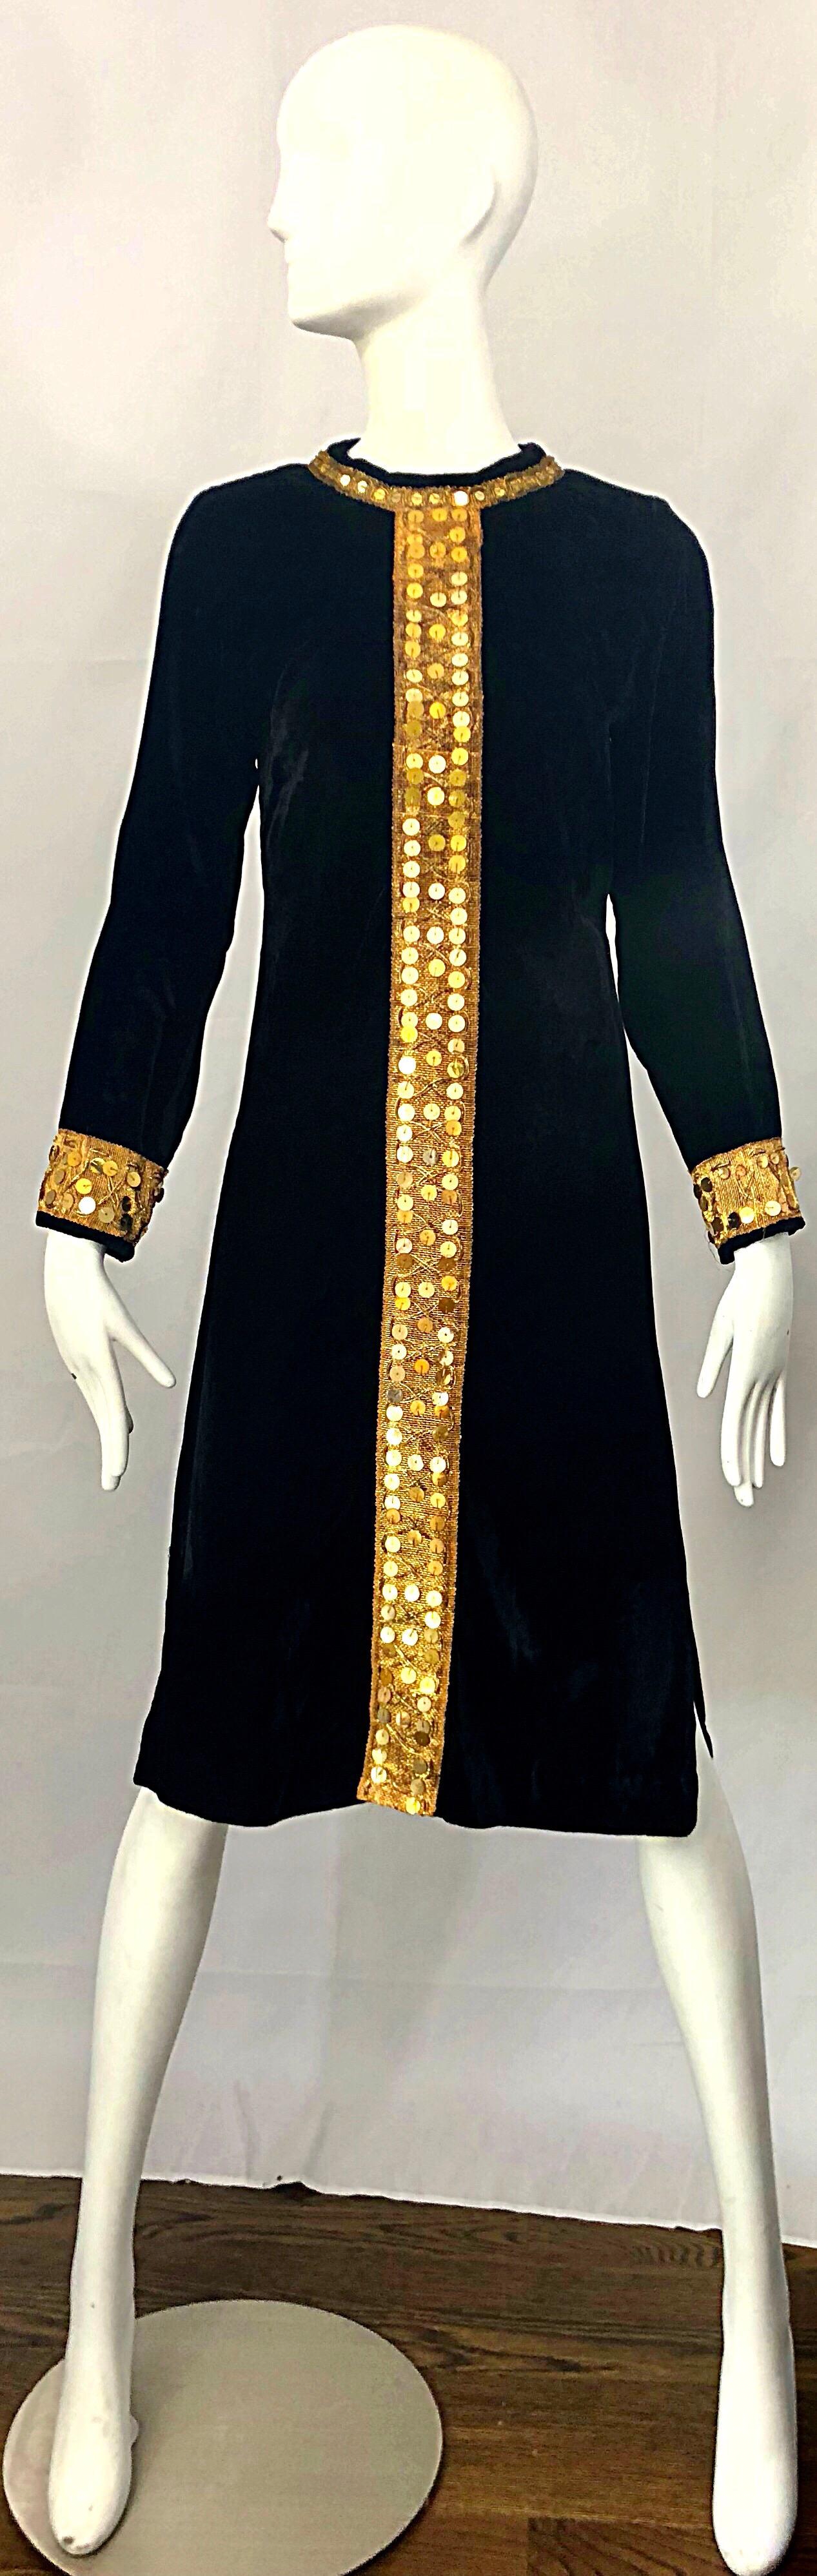 Schickes langärmeliges Tunikakleid aus schwarzem Samt und goldenen Pailletten aus den 1960er Jahren! Aus weichem Baumwollsamt, mit goldfarbener Stickerei in der vorderen Mitte. Hunderte von großen, handgenähten Goldpailletten auf der Vorderseite, am